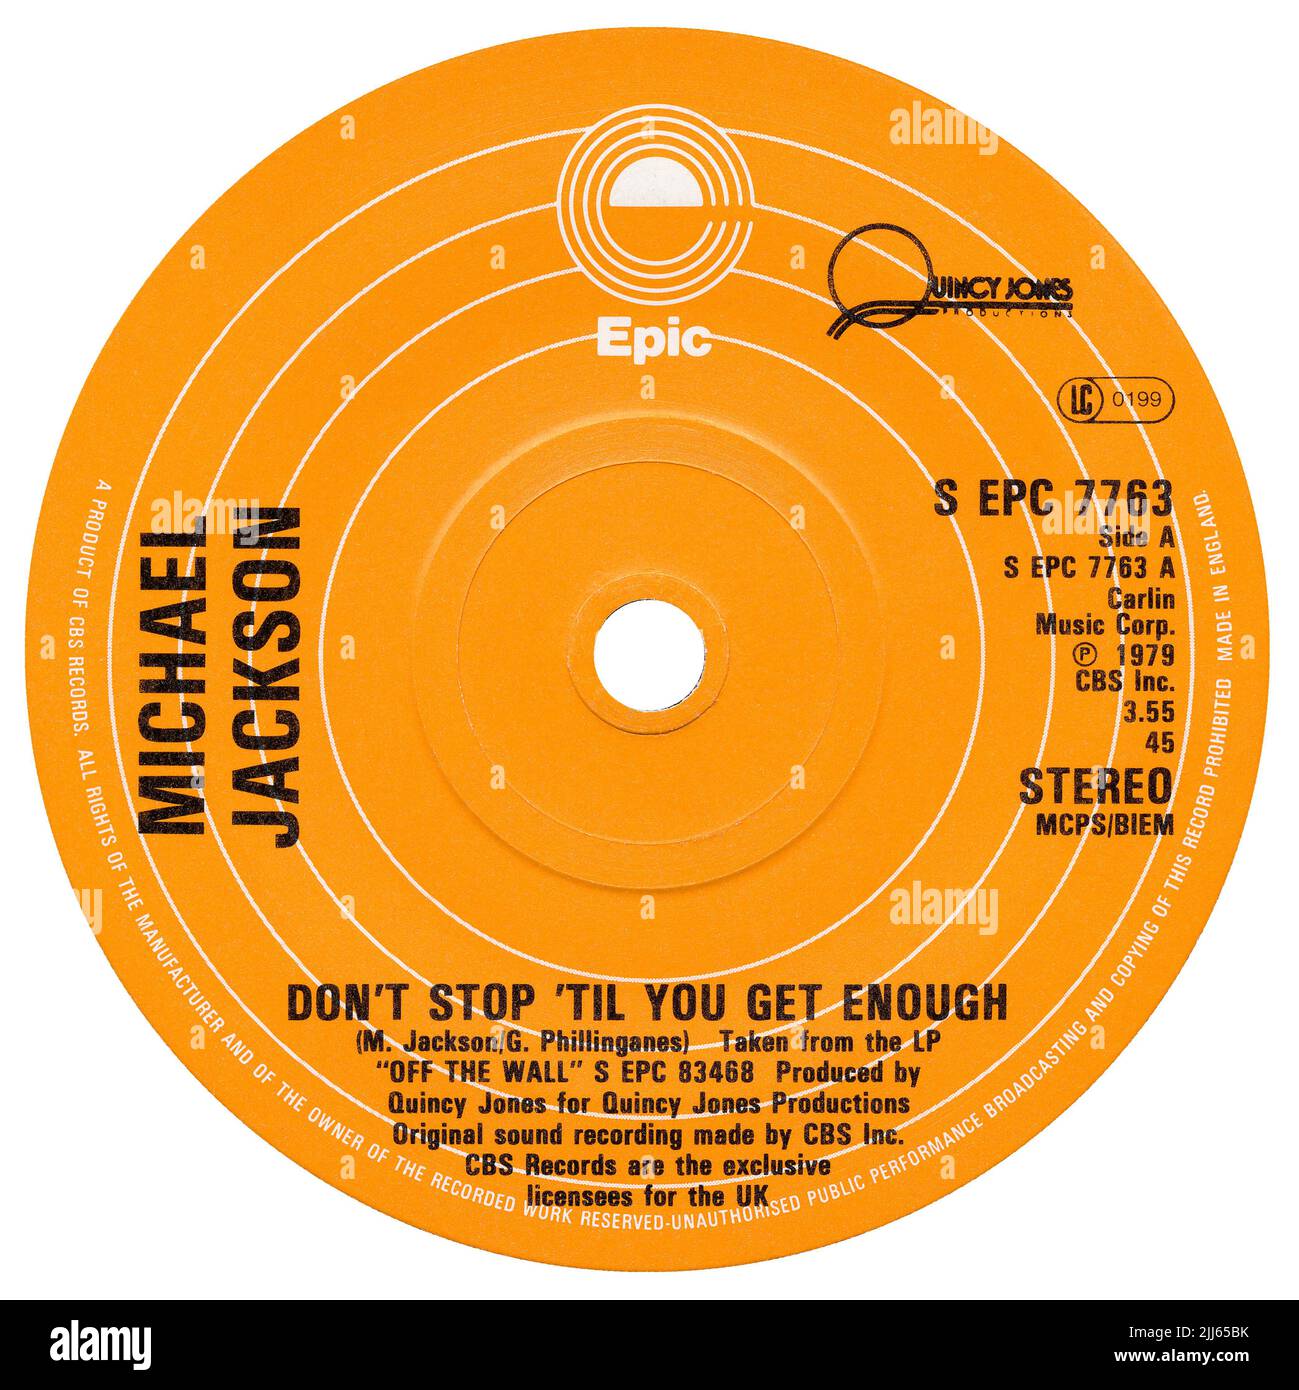 45 RPM 7' UK Pop Soul Label von Don't Stop 'Til You Get Enough von Michael Jackson. Geschrieben von Michael Jackson und Greg Philinganes und produziert von Quincy Jones. Veröffentlicht im August 1979 auf dem Epic Label. Stockfoto